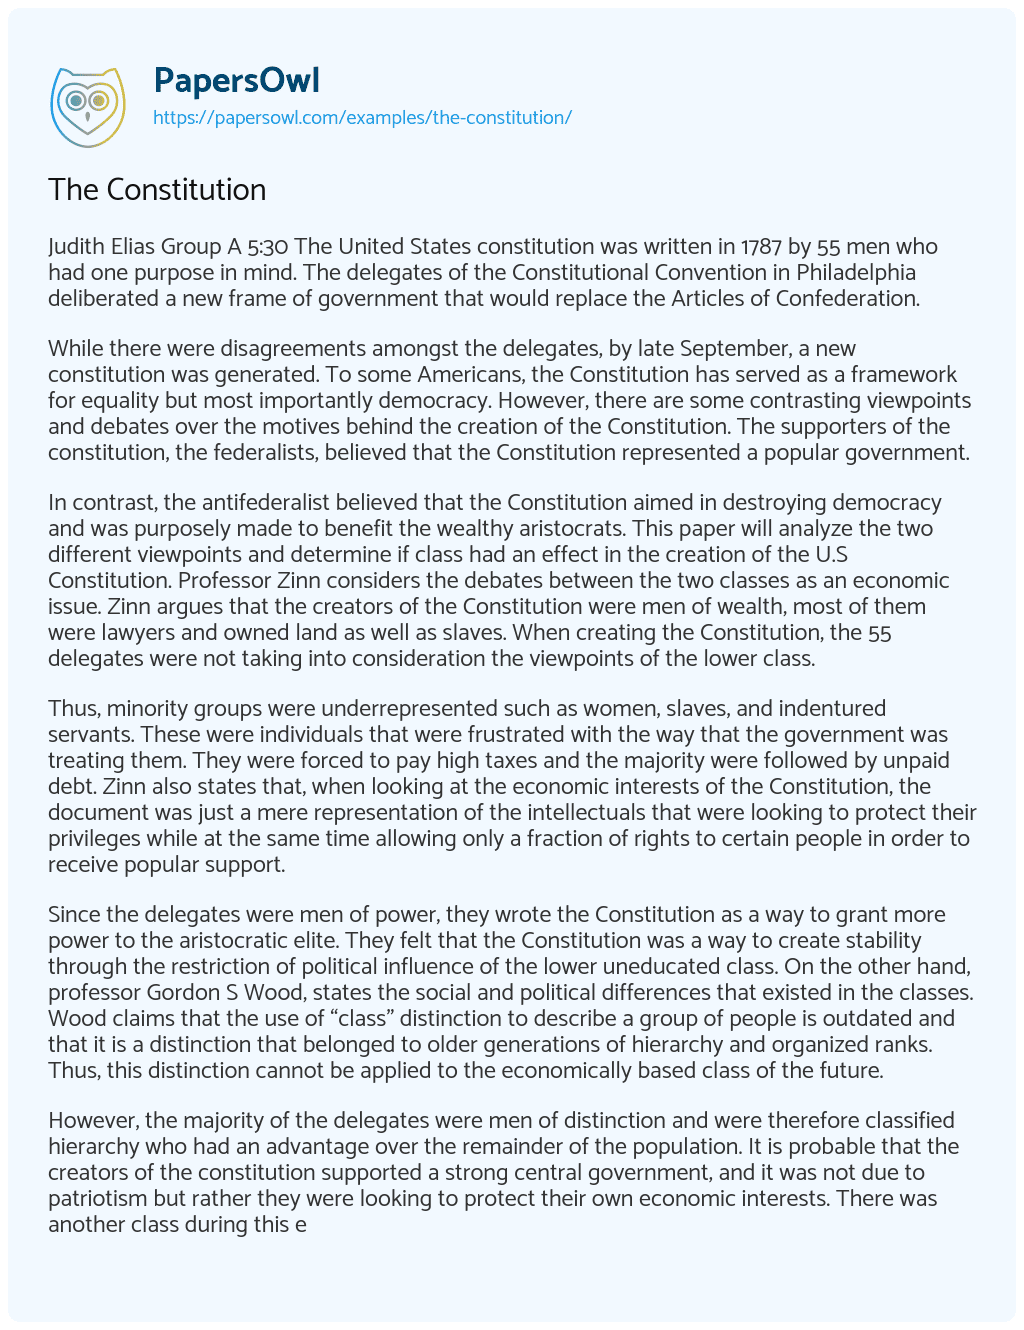 The Constitution essay